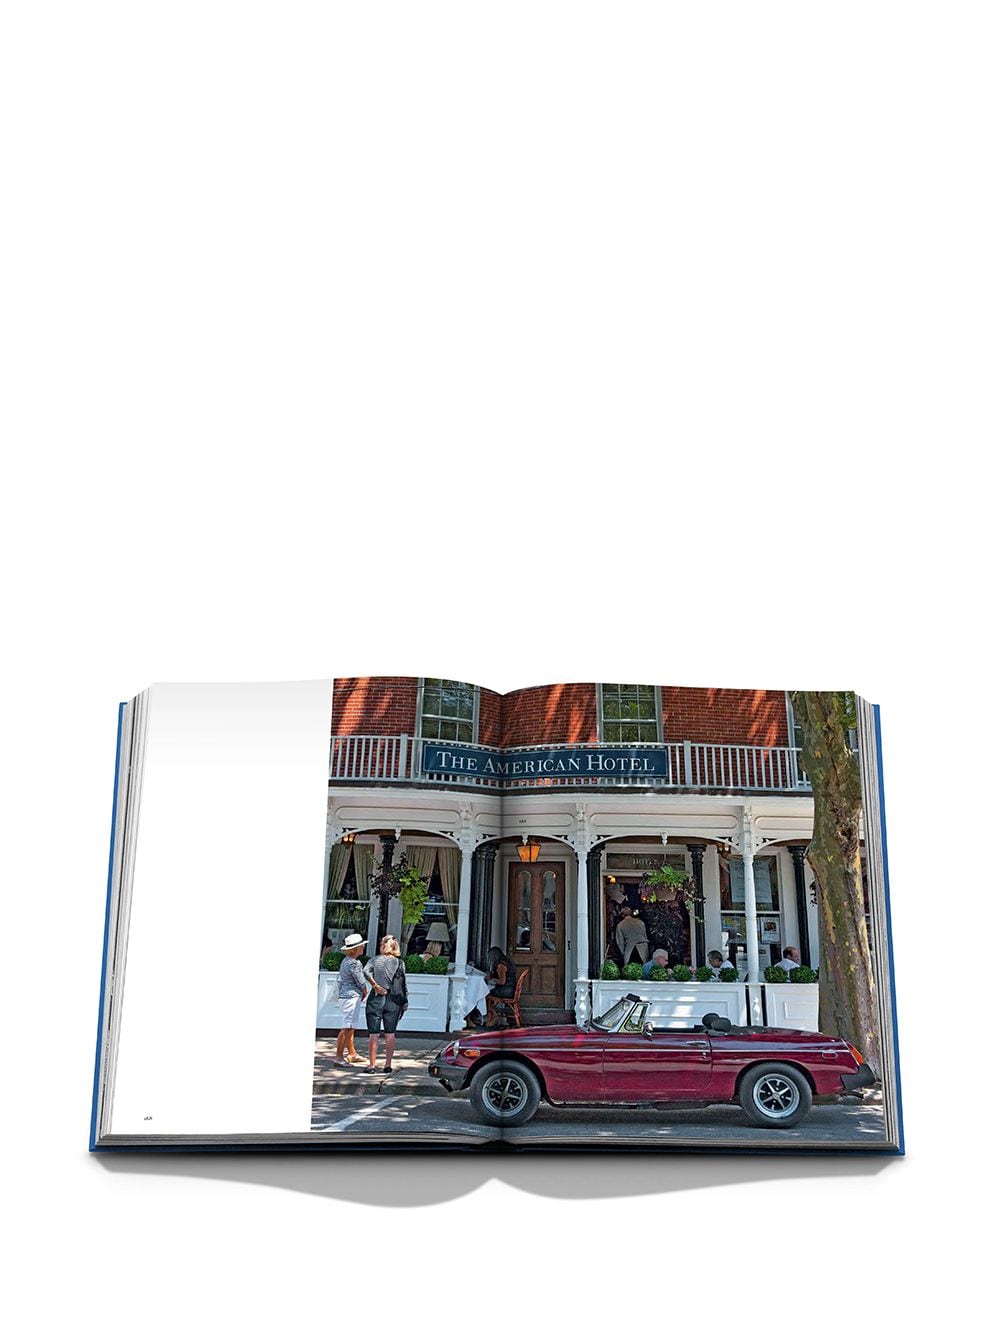 Shop Assouline Hamptons Private Book In Blau